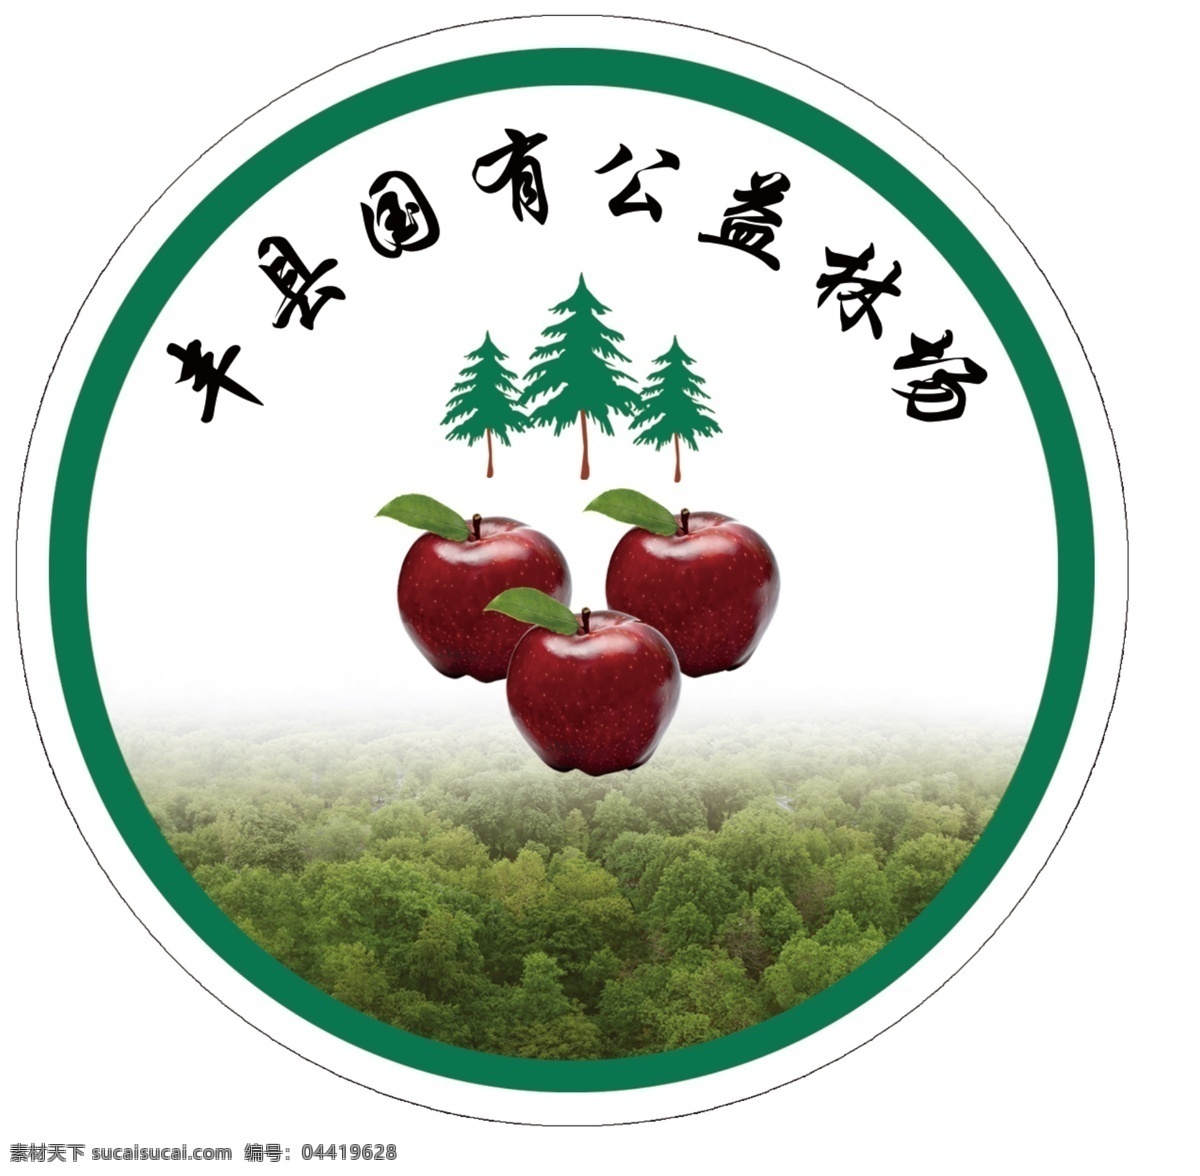 国有公益林场 林场 logo 苹果 森林 林业 展板模板